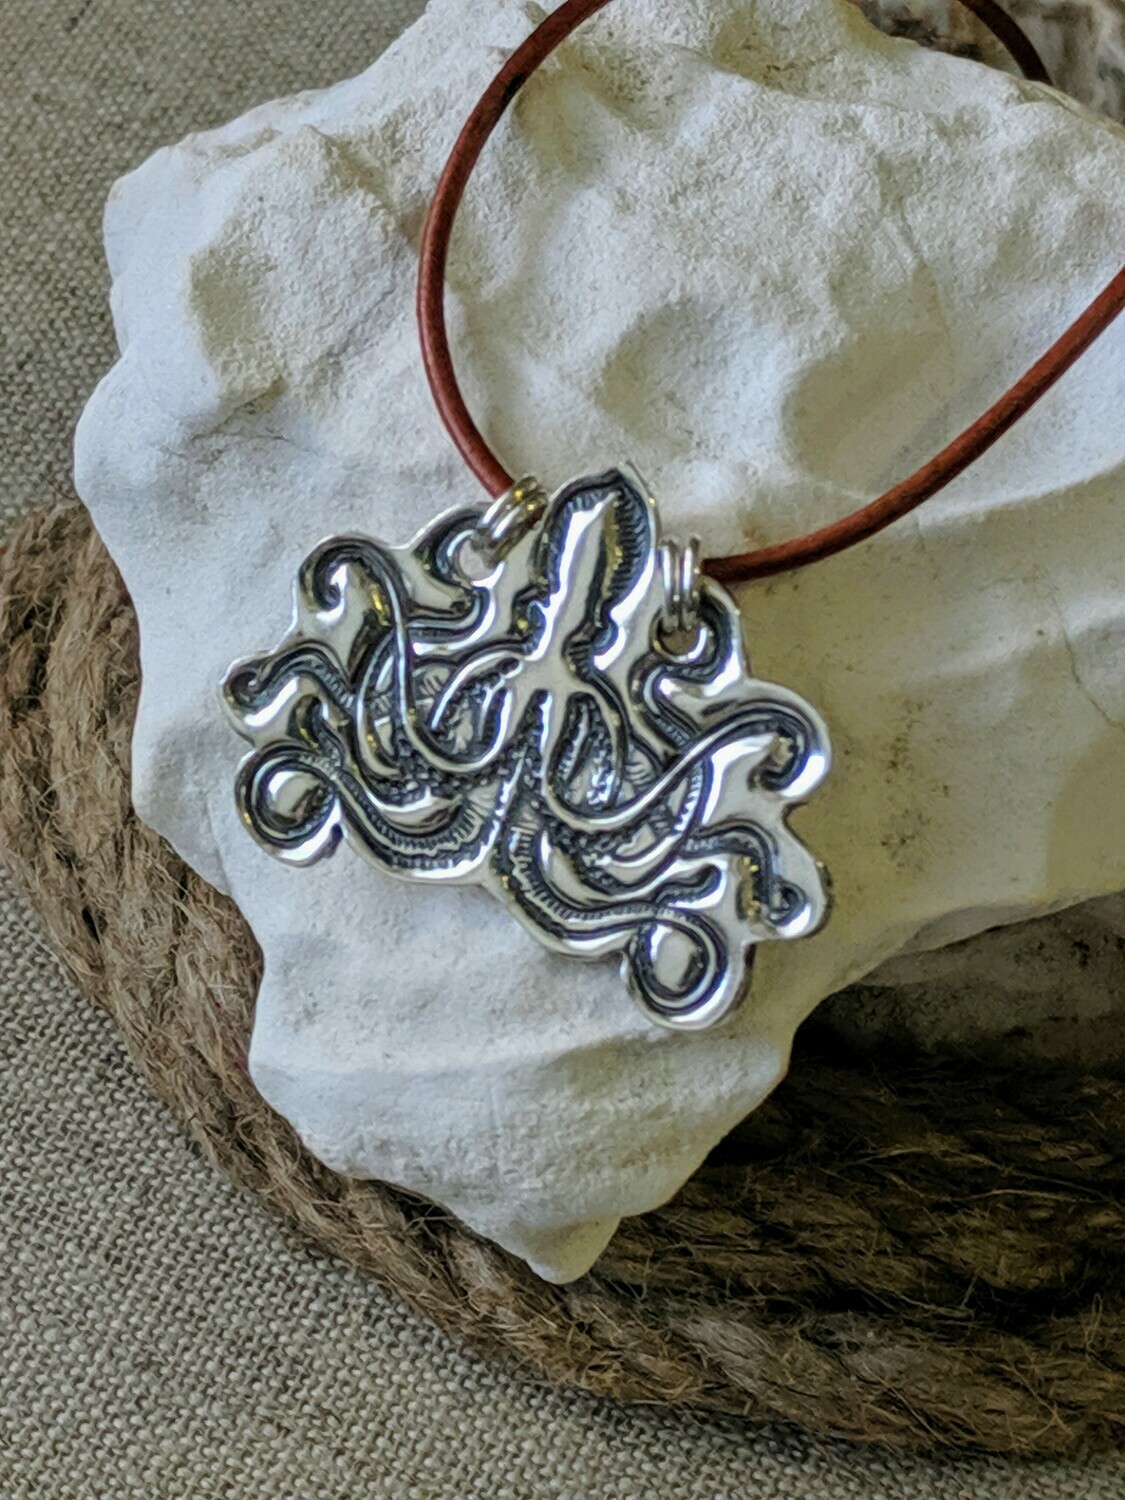 Kraken (Octopus) Pendant by Seaside Silver